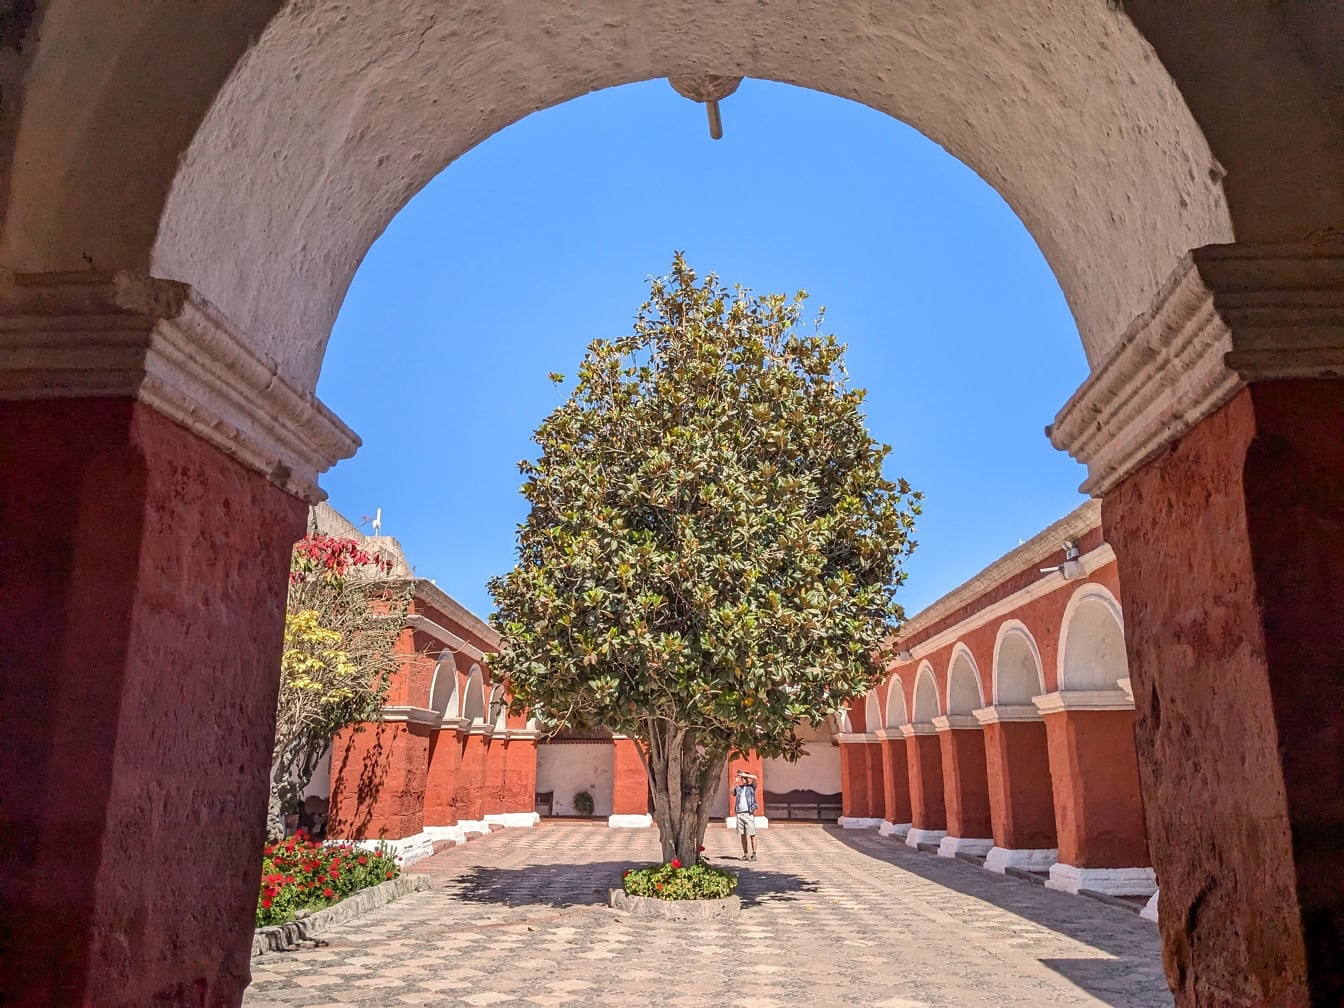 Baum im Innenhof des Klosters Santa Catalina de Siena in Arequipa in Peru, das zum UNESCO-Weltkulturerbe gehört